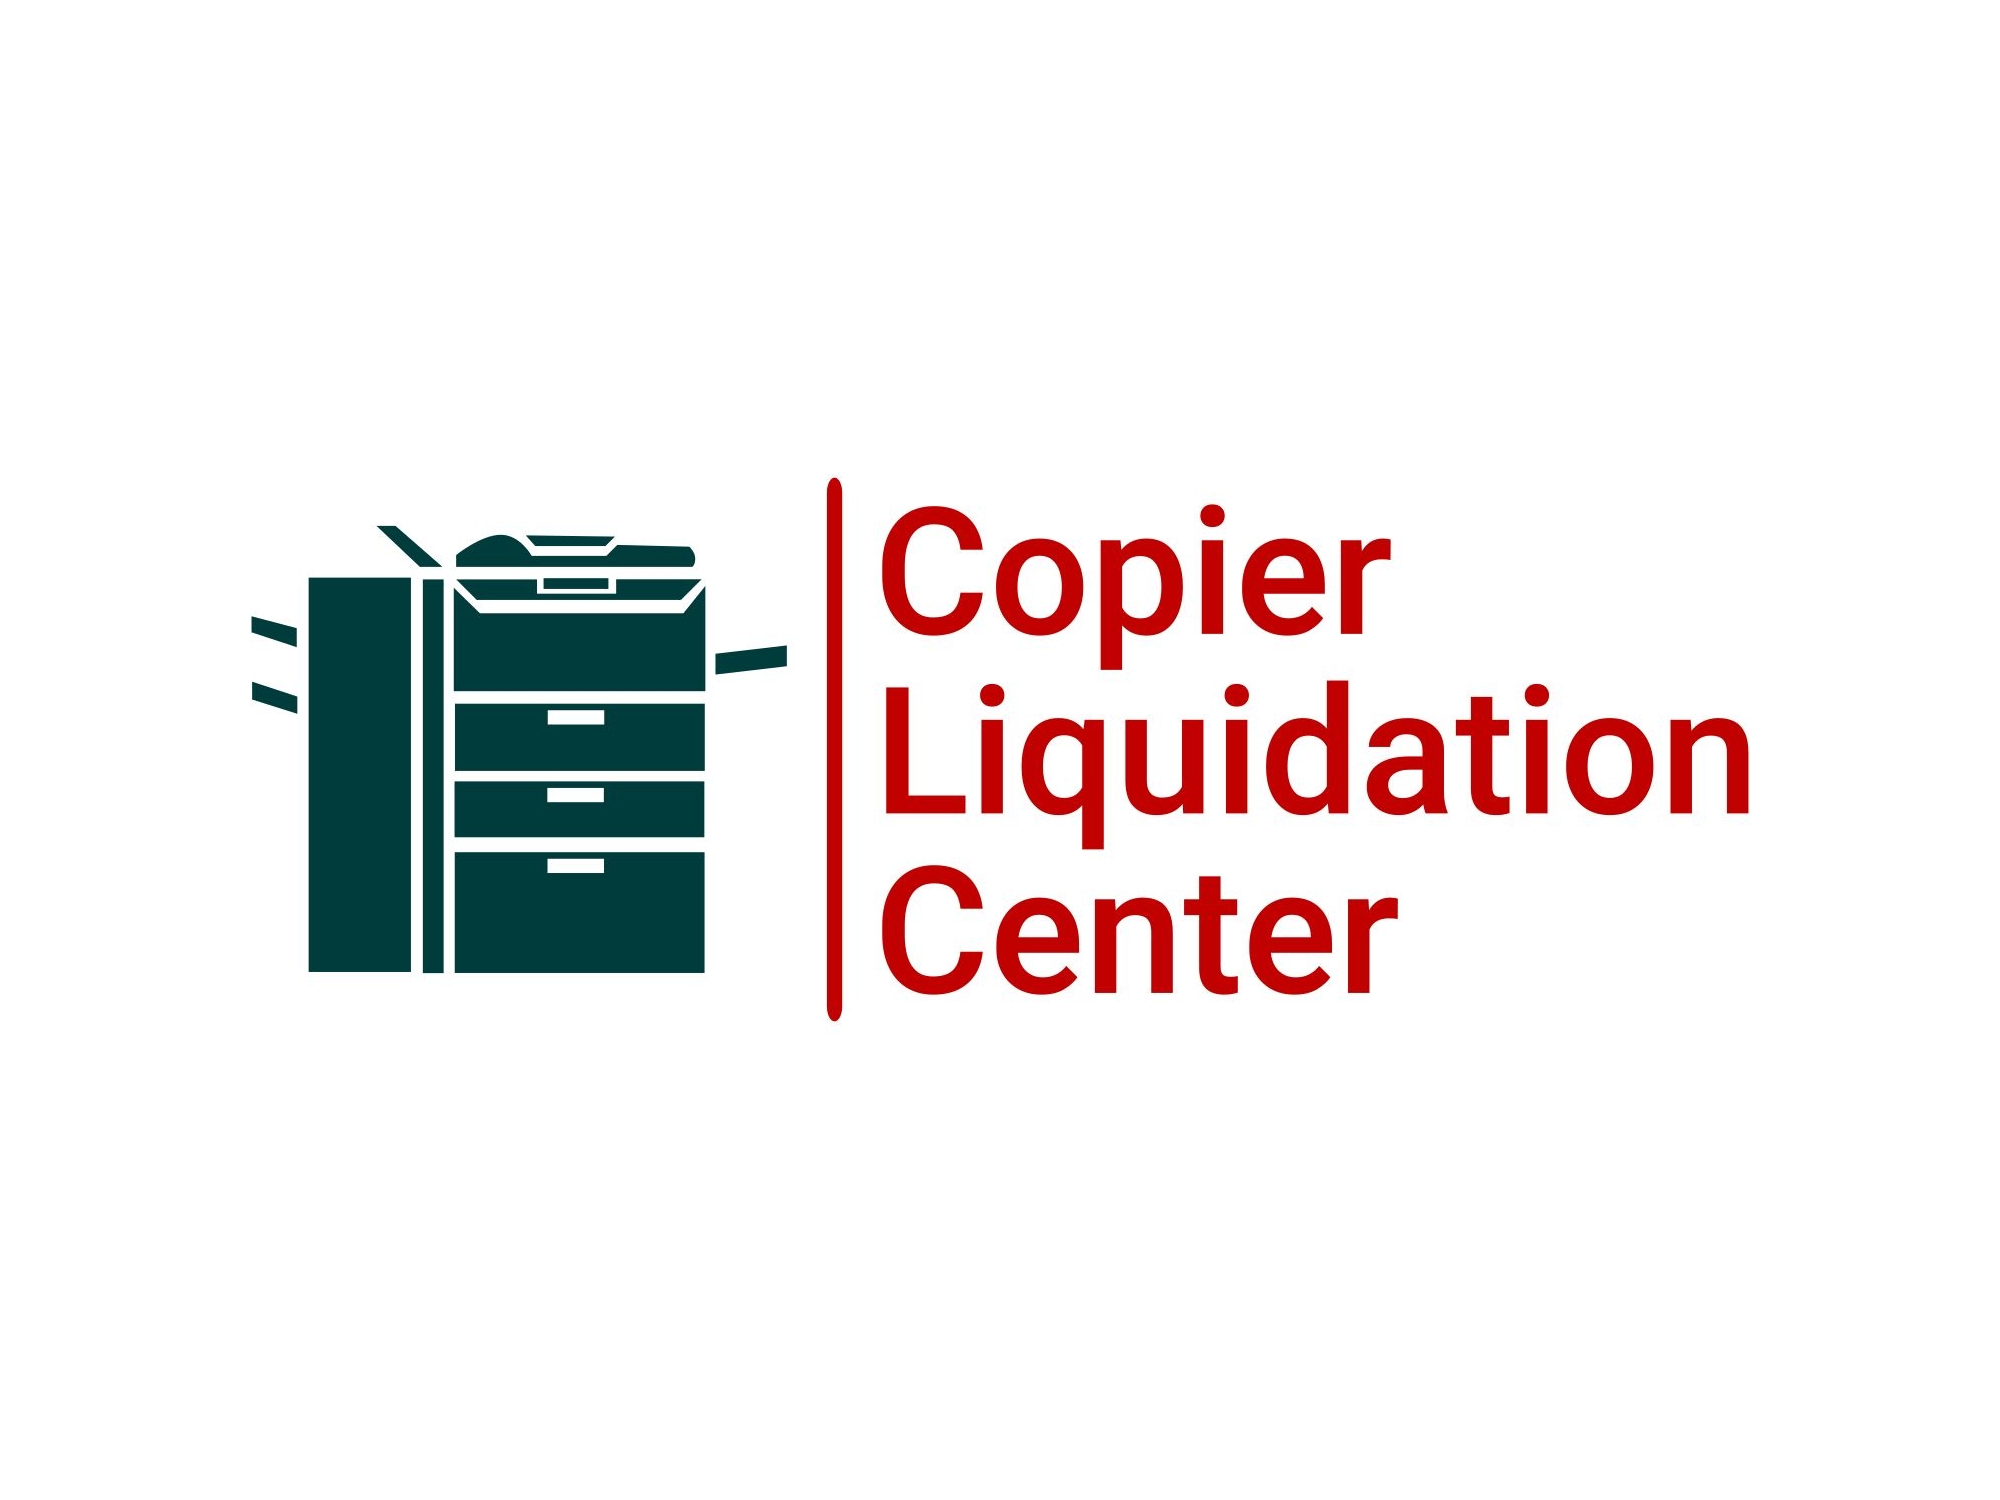 Copier Liquidation Center logo